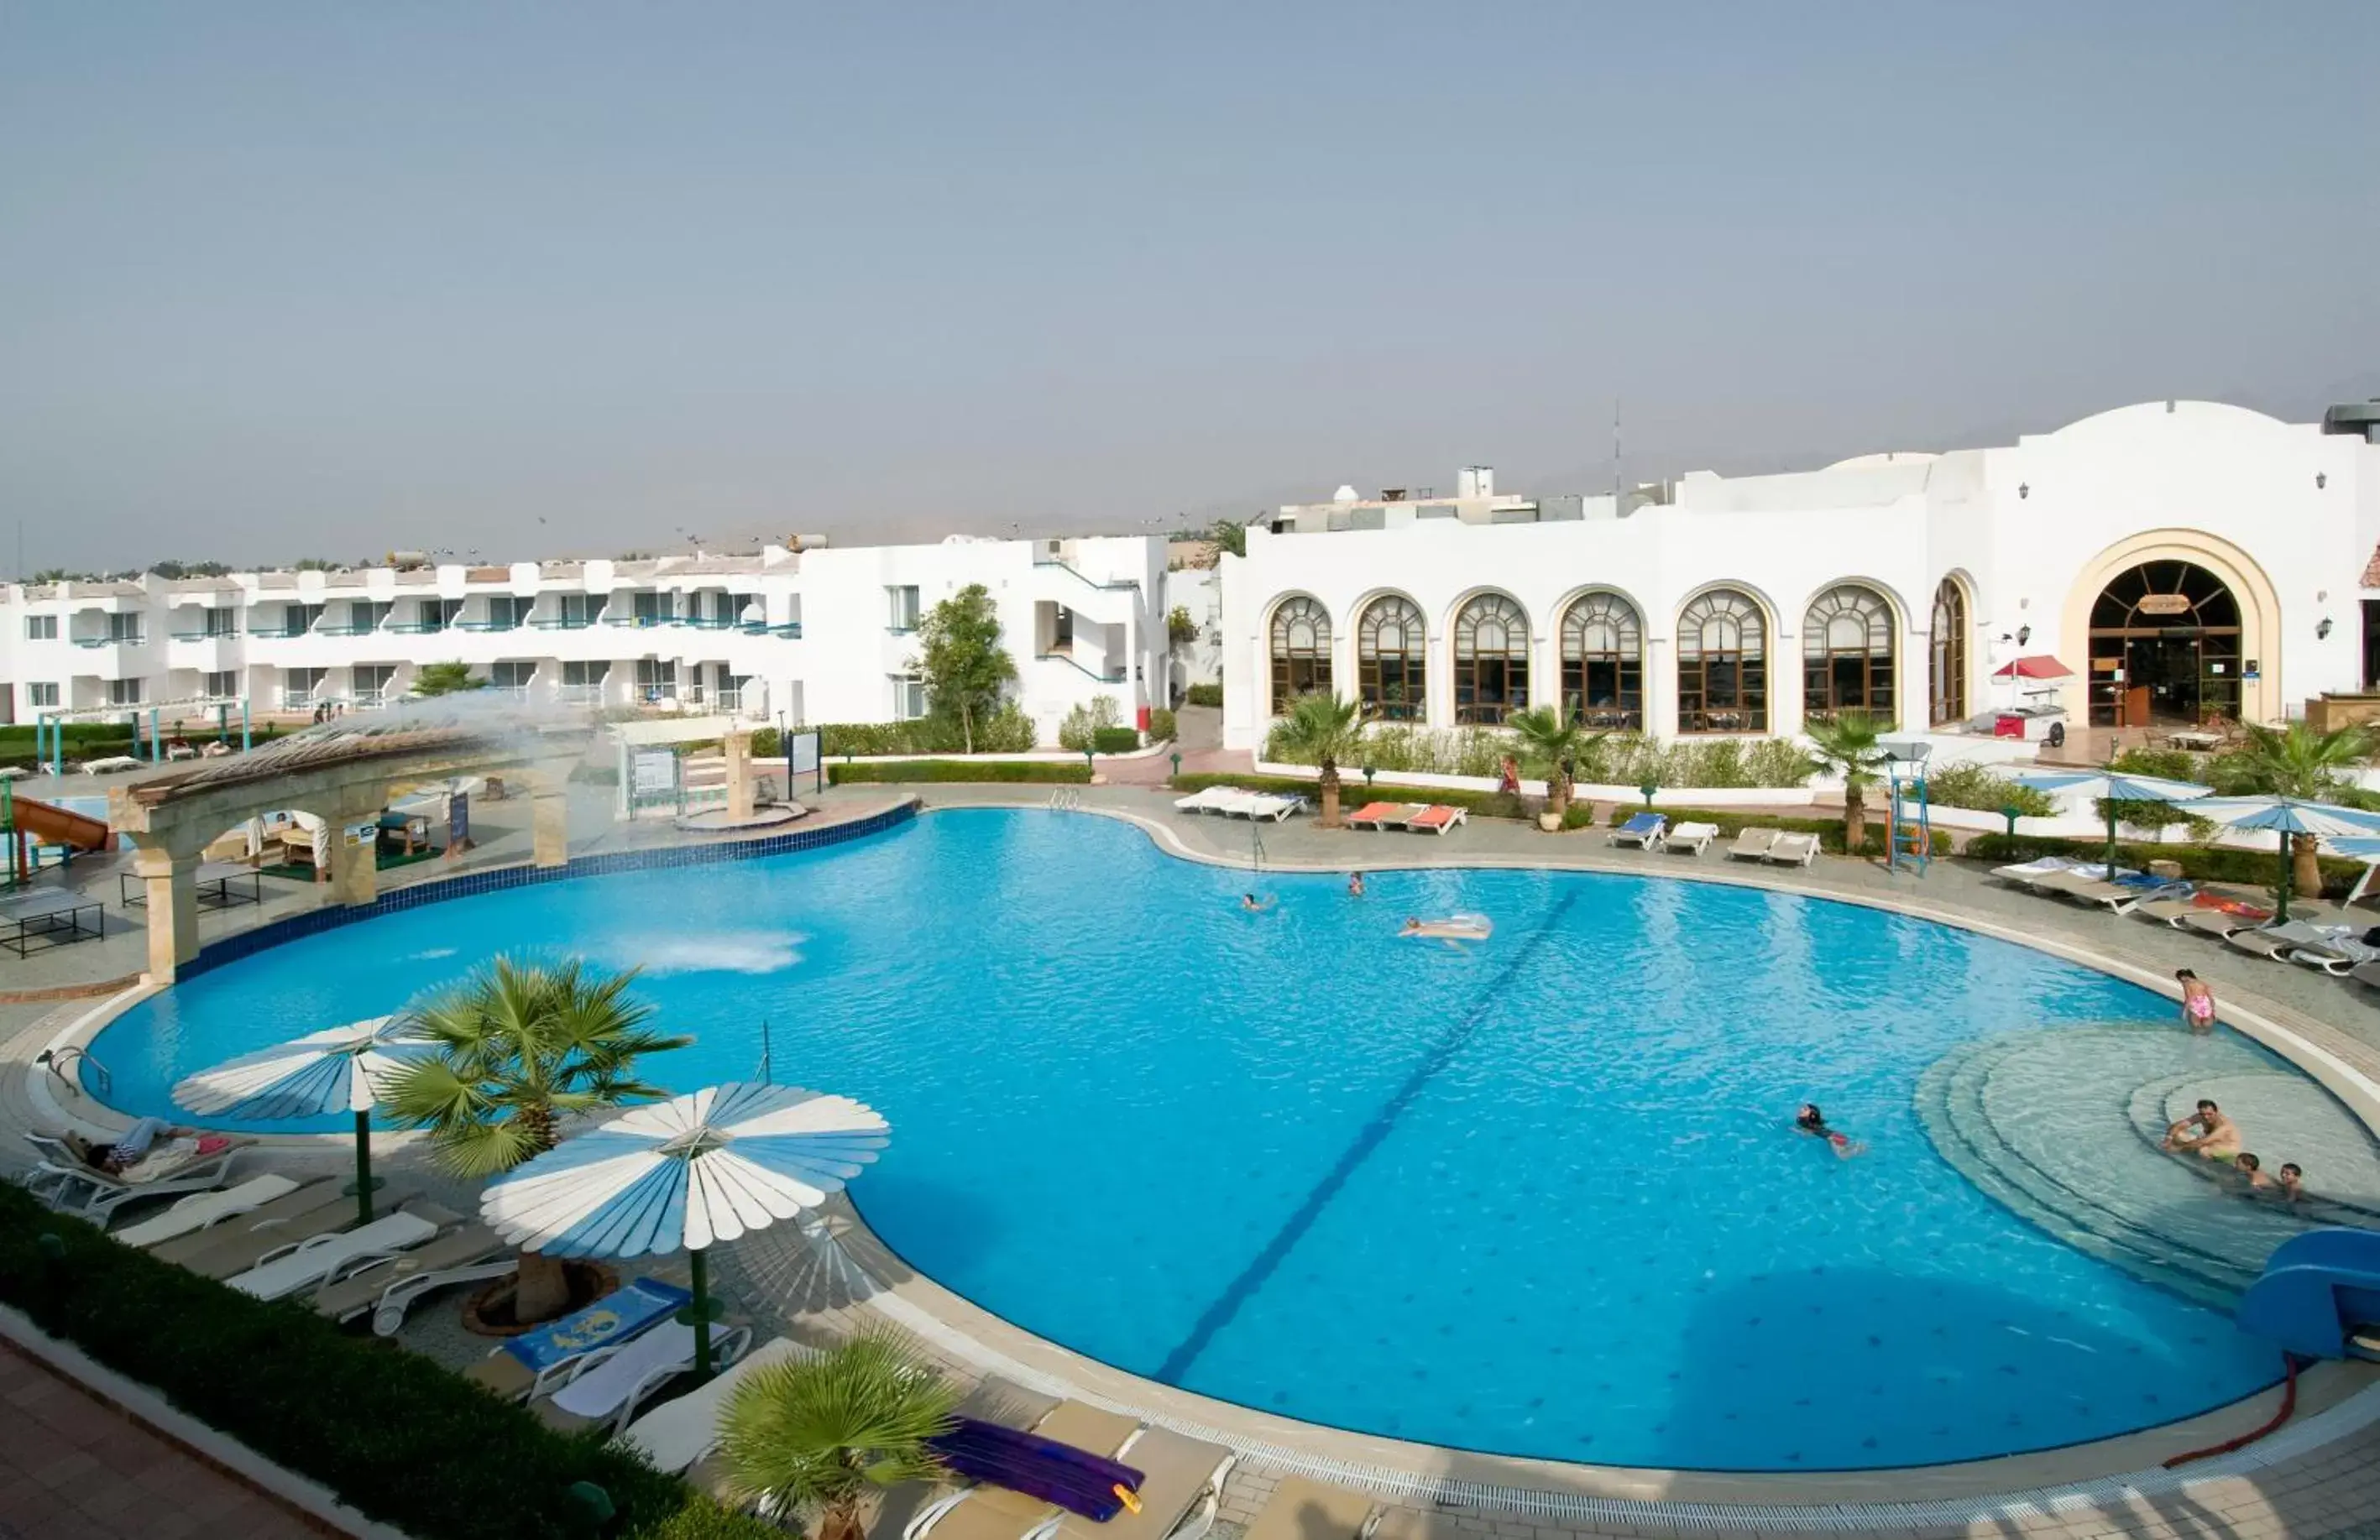 Facade/entrance, Swimming Pool in Dreams Vacation Resort - Sharm El Sheikh